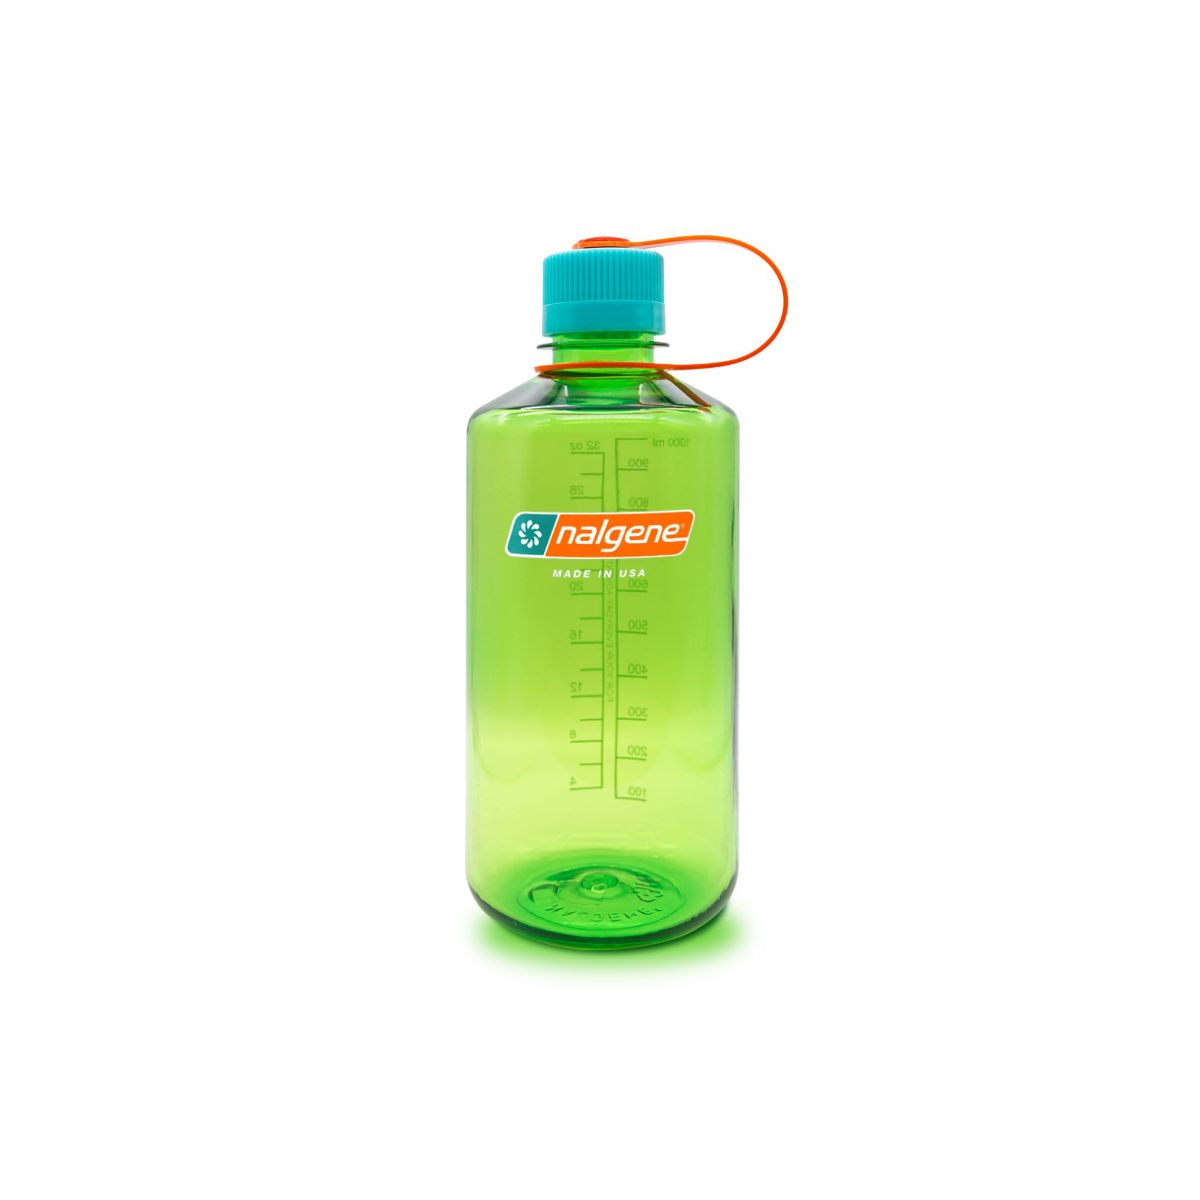 grønn drikkeflaske i BPA-fri plast. Flasken rommer 1 liter drikke.